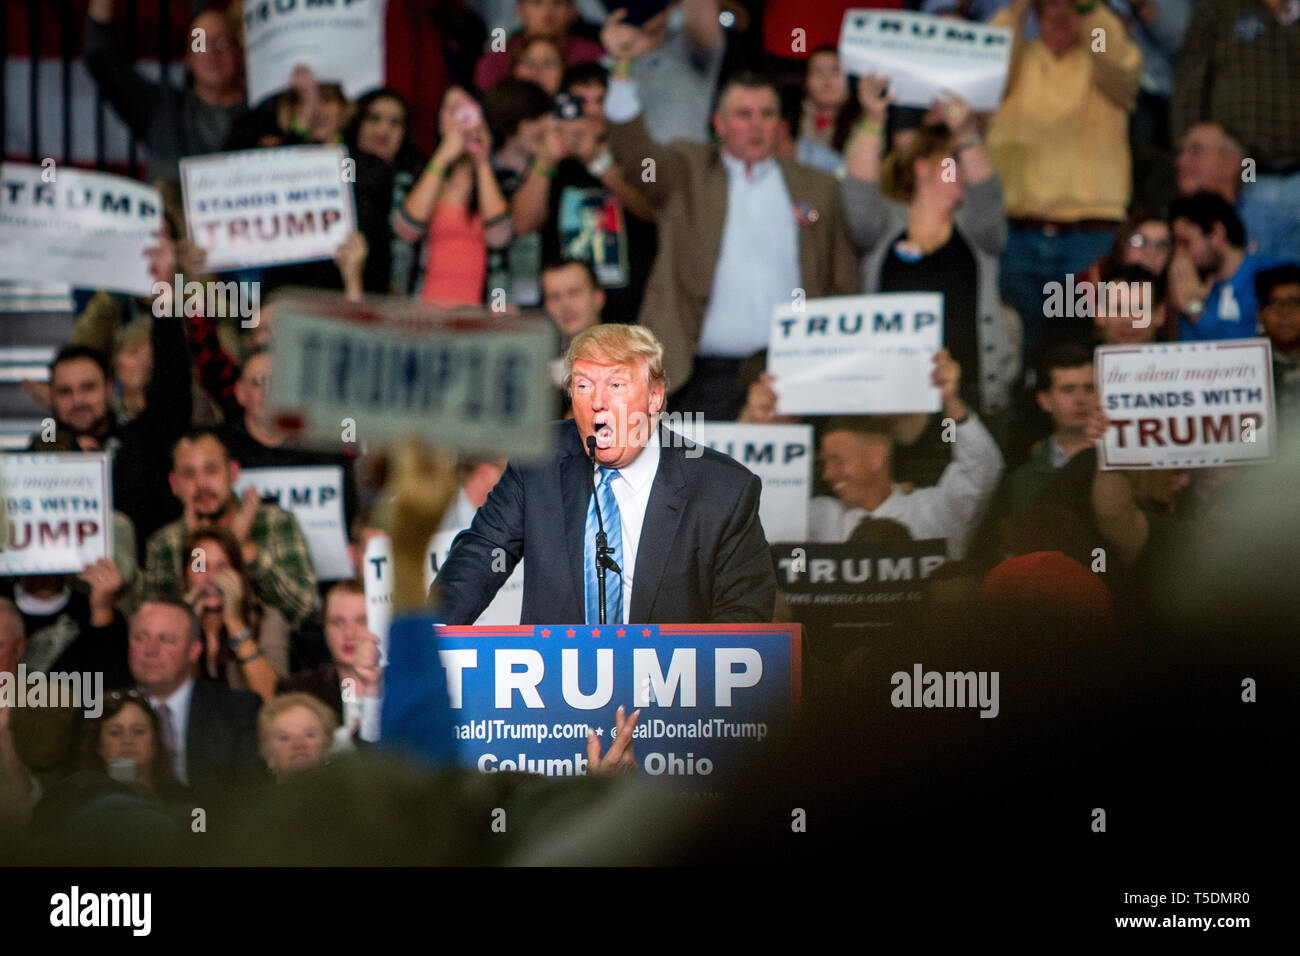 Präsidentschaftskandidaten Donald Trump (R) spricht auf einer Veranstaltung in der Arena Convention Center in Columbus. Stockfoto